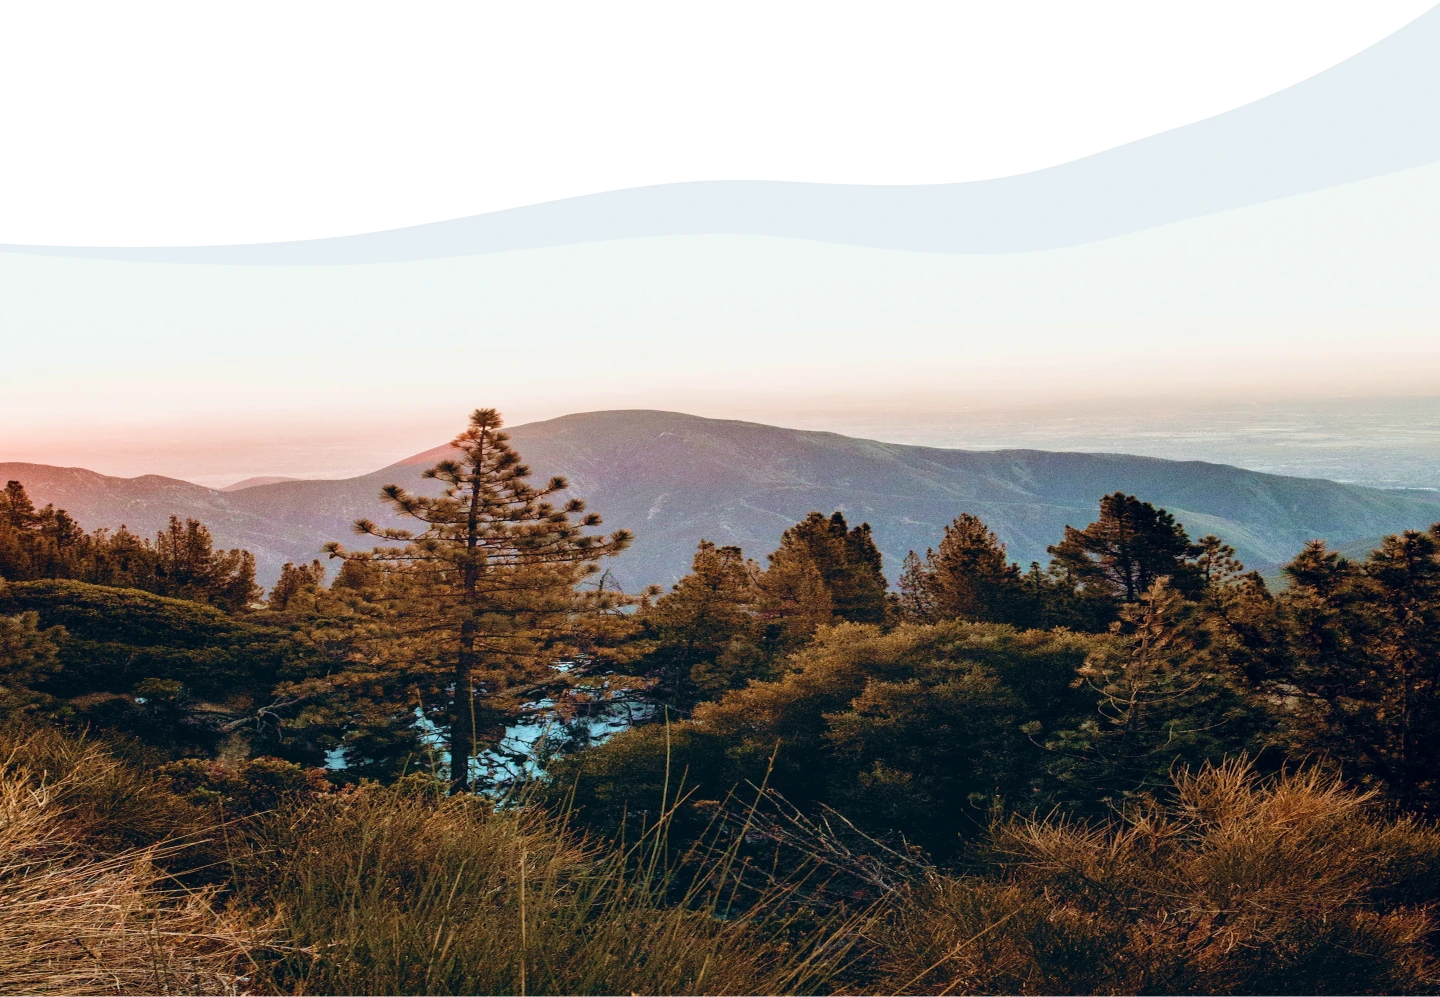 Ein Panorama von einem Bergrücken bei Sonnenuntergang mit einem prominenten Nadelbaum im Vordergrund und einem Blick auf bewaldete Hügel, die in der Ferne unter einem orange gefärbten Himmel in eine Ebene übergehen. Das Bild ist oben unvollständig und zeigt eine gezackte Kante, die auf einen Fehler bei der Bildbearbeitung oder ein Problem beim Laden hindeutet.